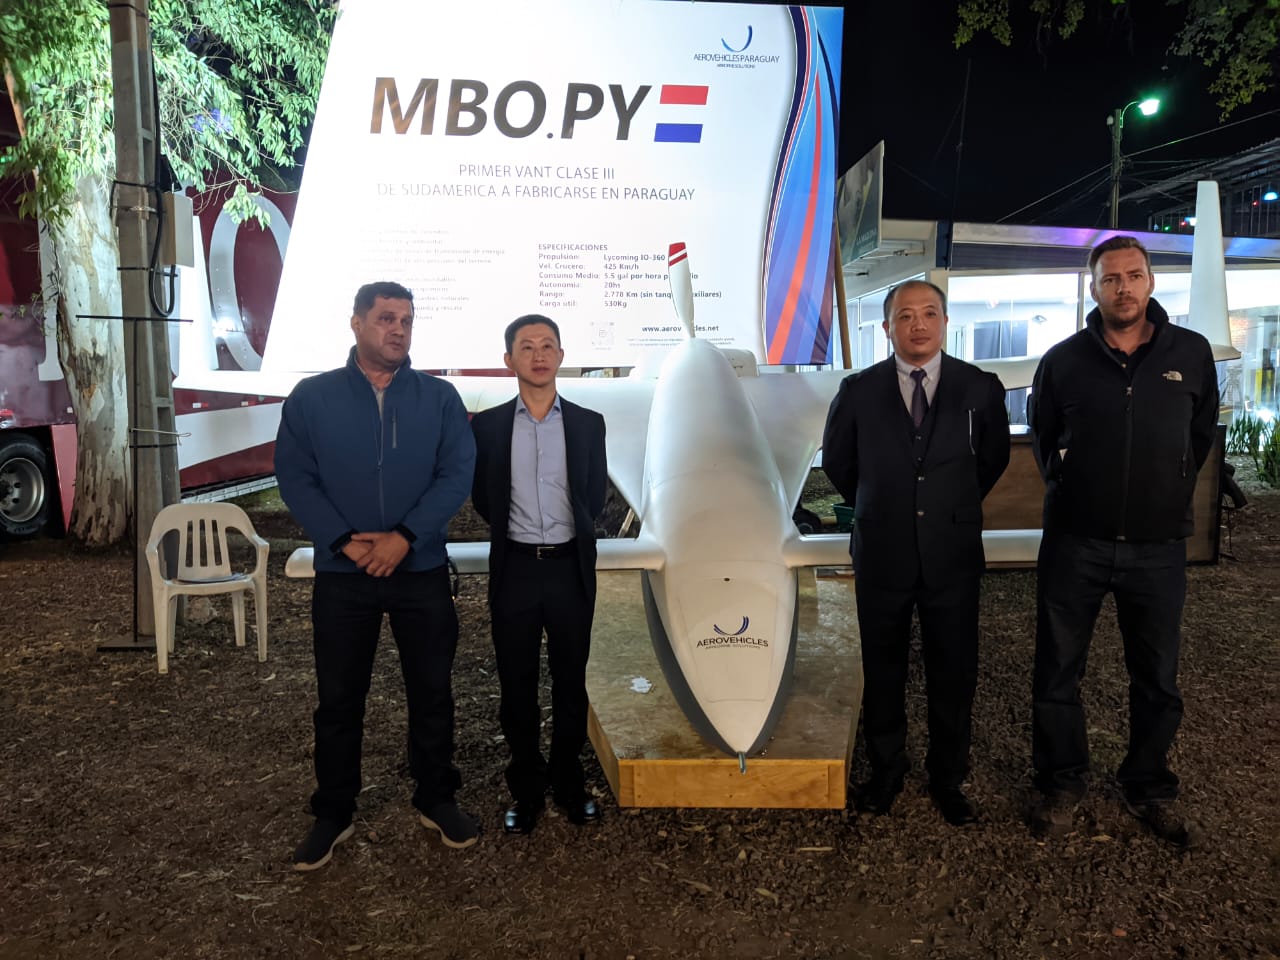 Berkut MBOPY at Expo Mariano R. Alonso 2022